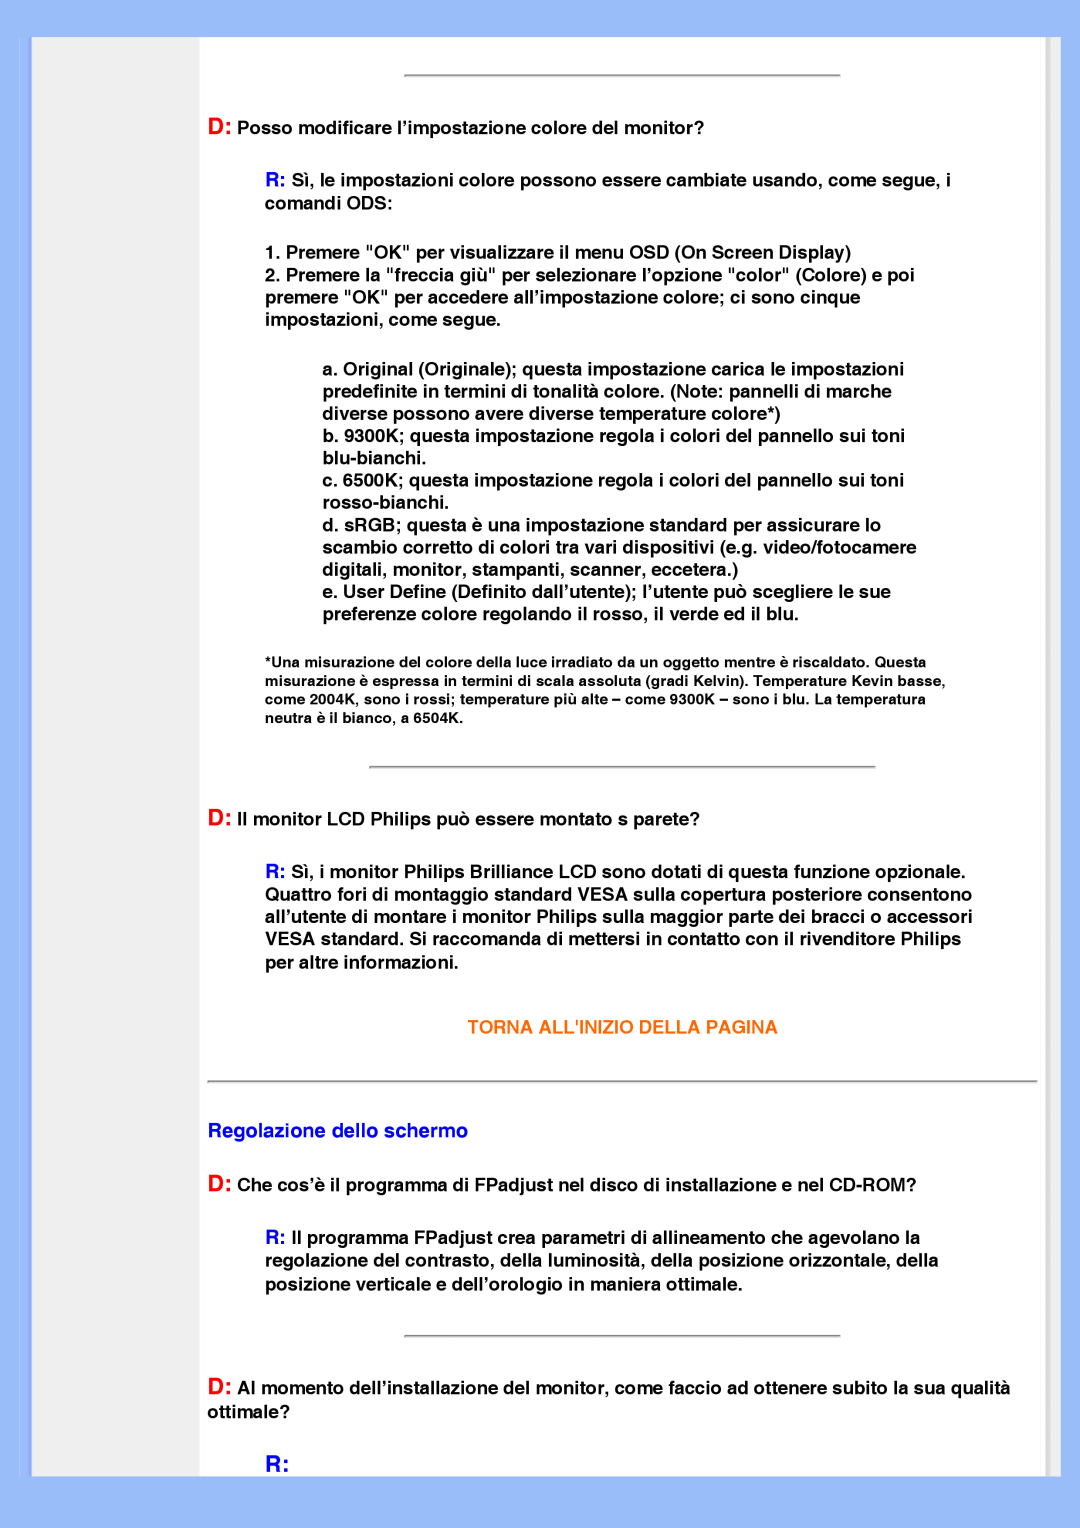 Philips 220VW8 user manual Regolazione dello schermo, Torna Allinizio Della Pagina 